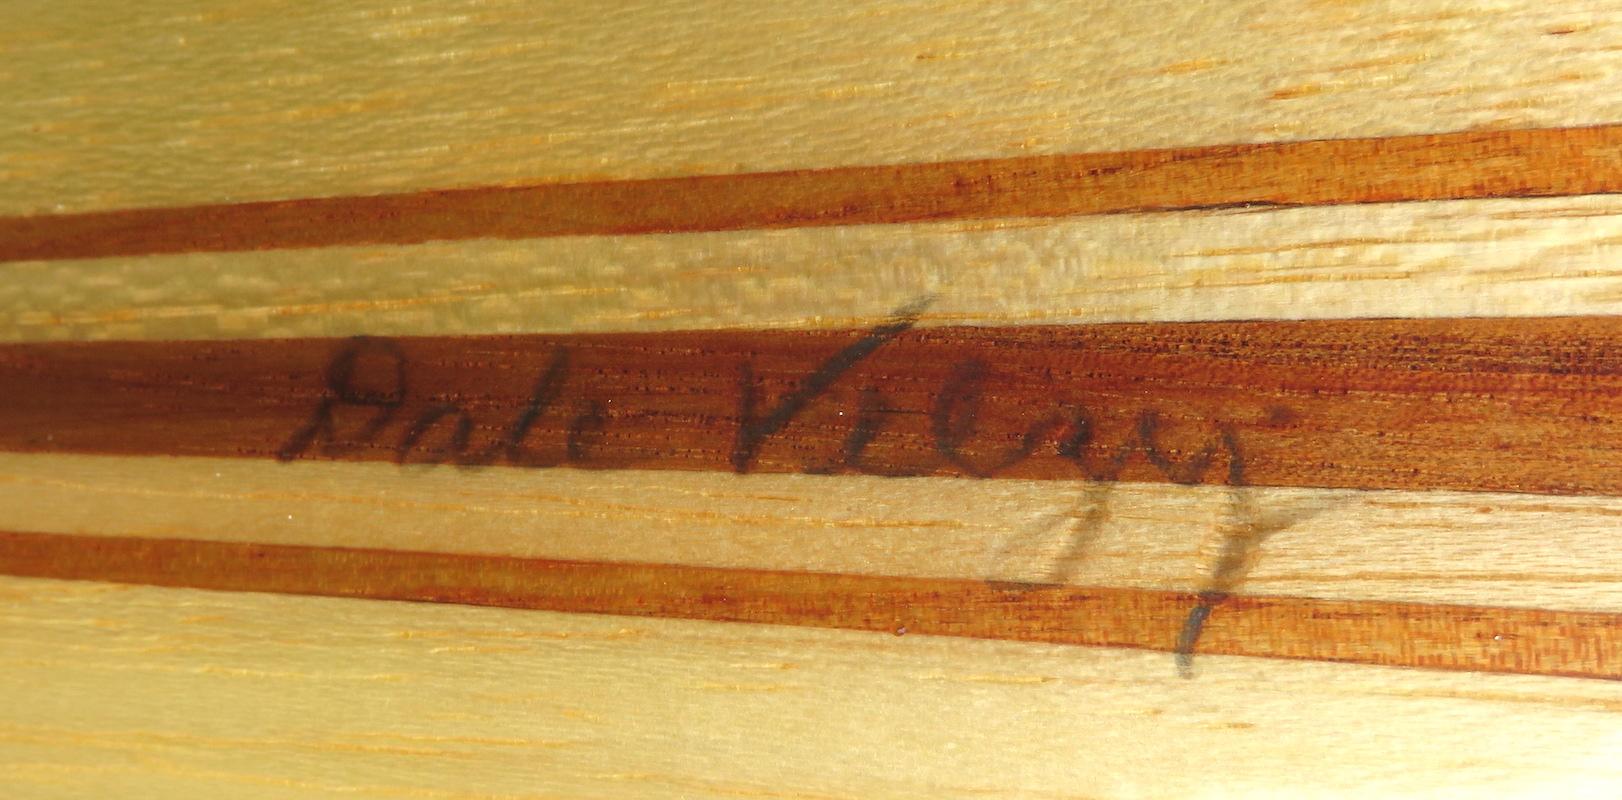 Fiberglass Dale Velzy Shaped Balsa Wood Longboard Surfboard For Sale